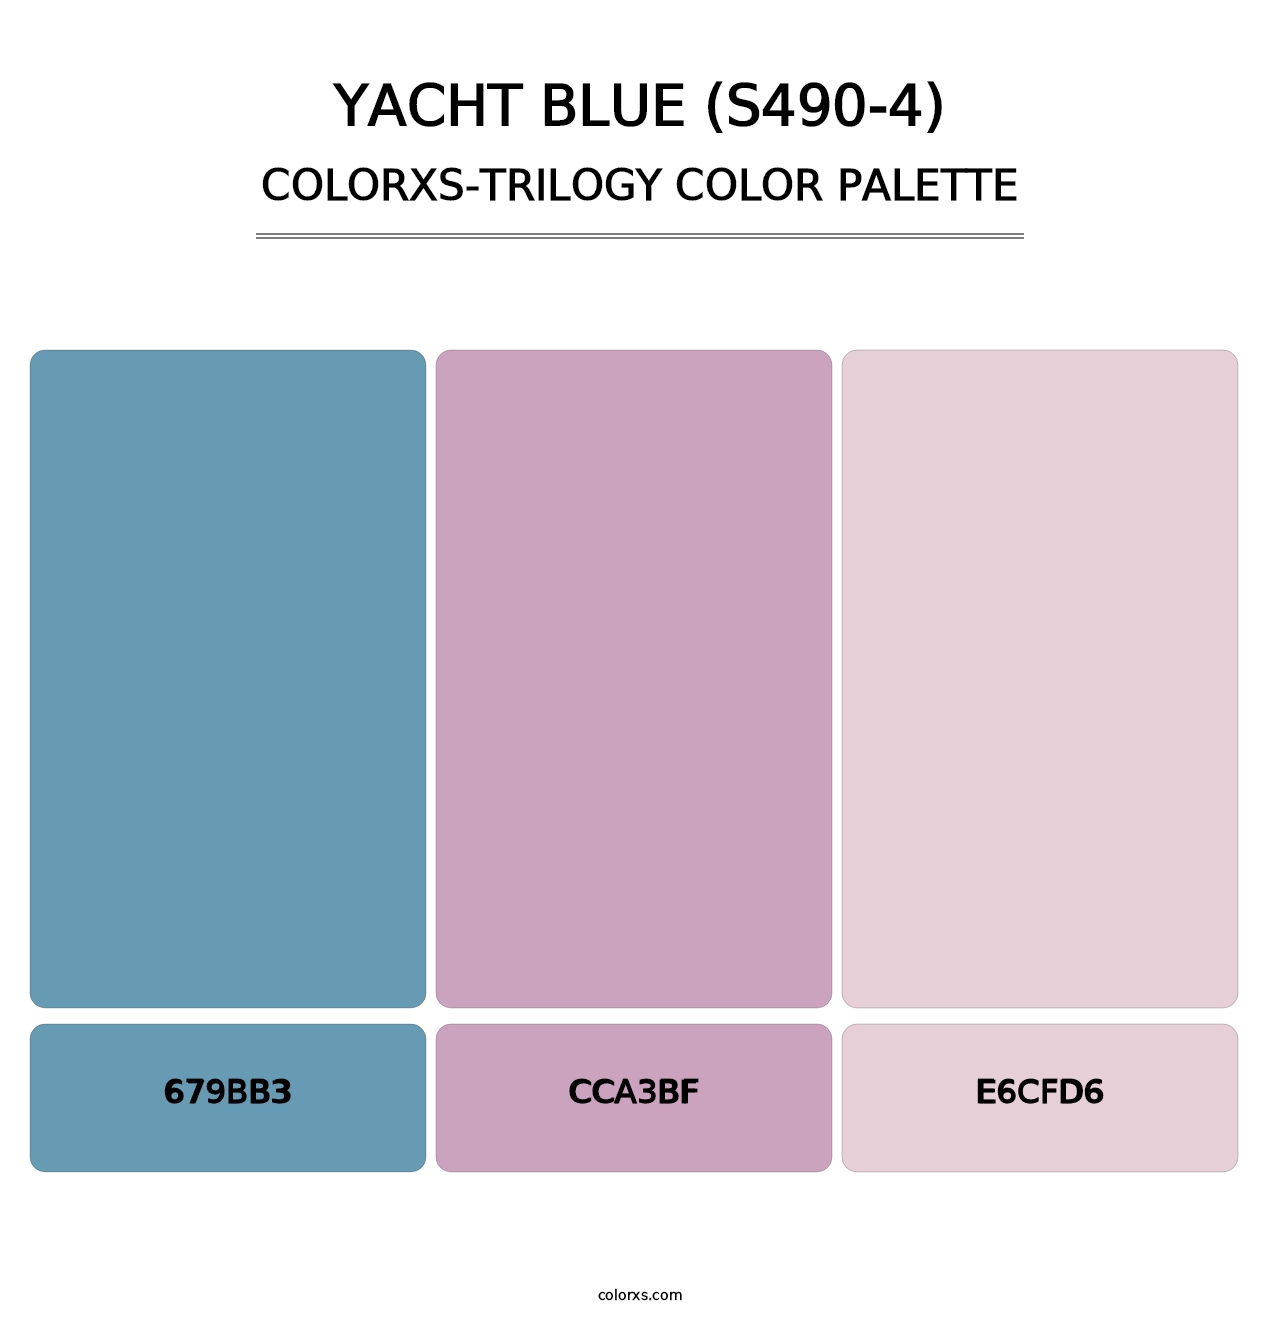 Yacht Blue (S490-4) - Colorxs Trilogy Palette